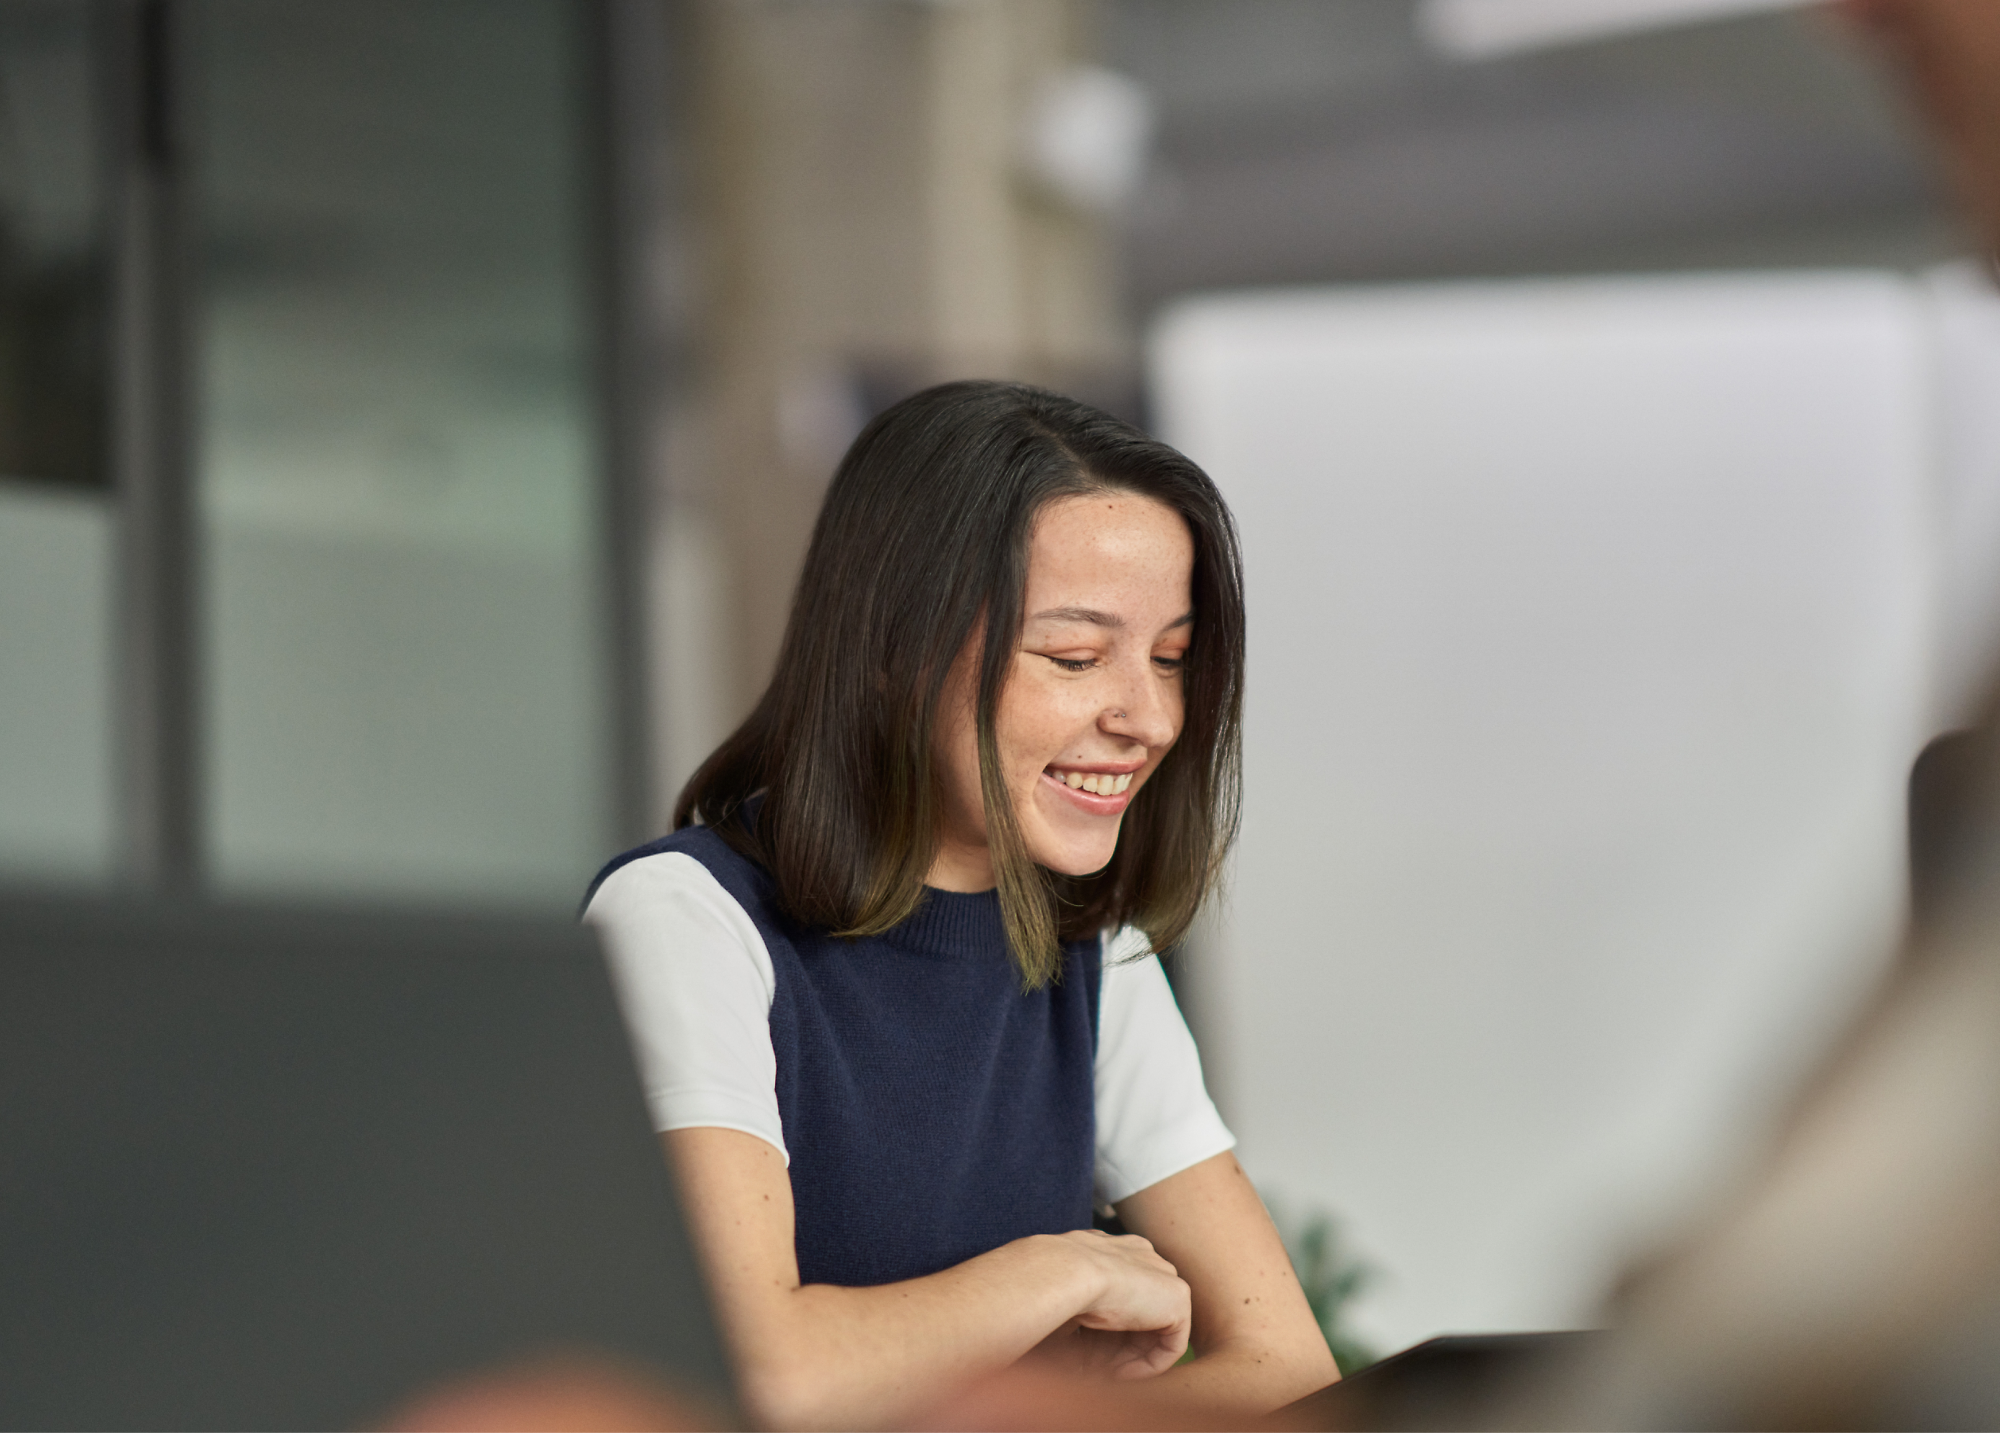 Mujer sonriendo durante una reunión en una oficina.